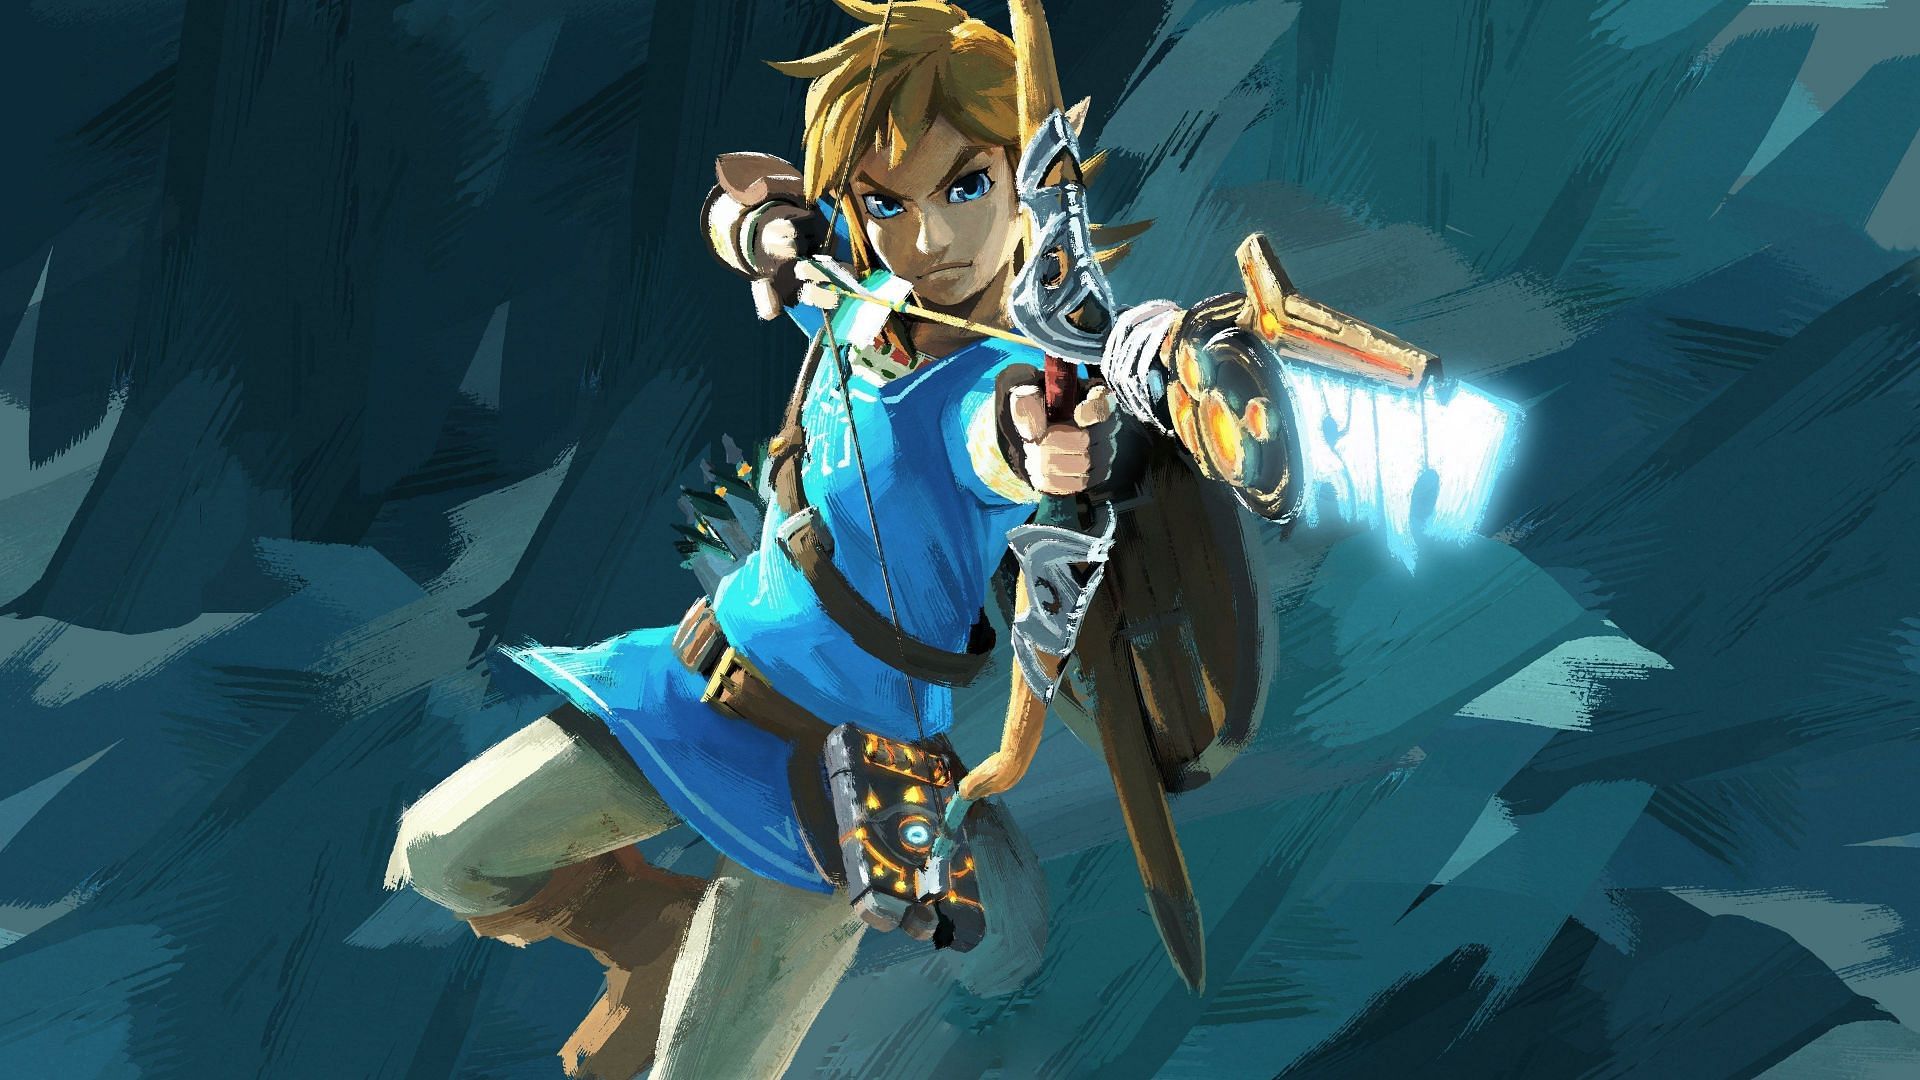 Link (Image via Nintendo)